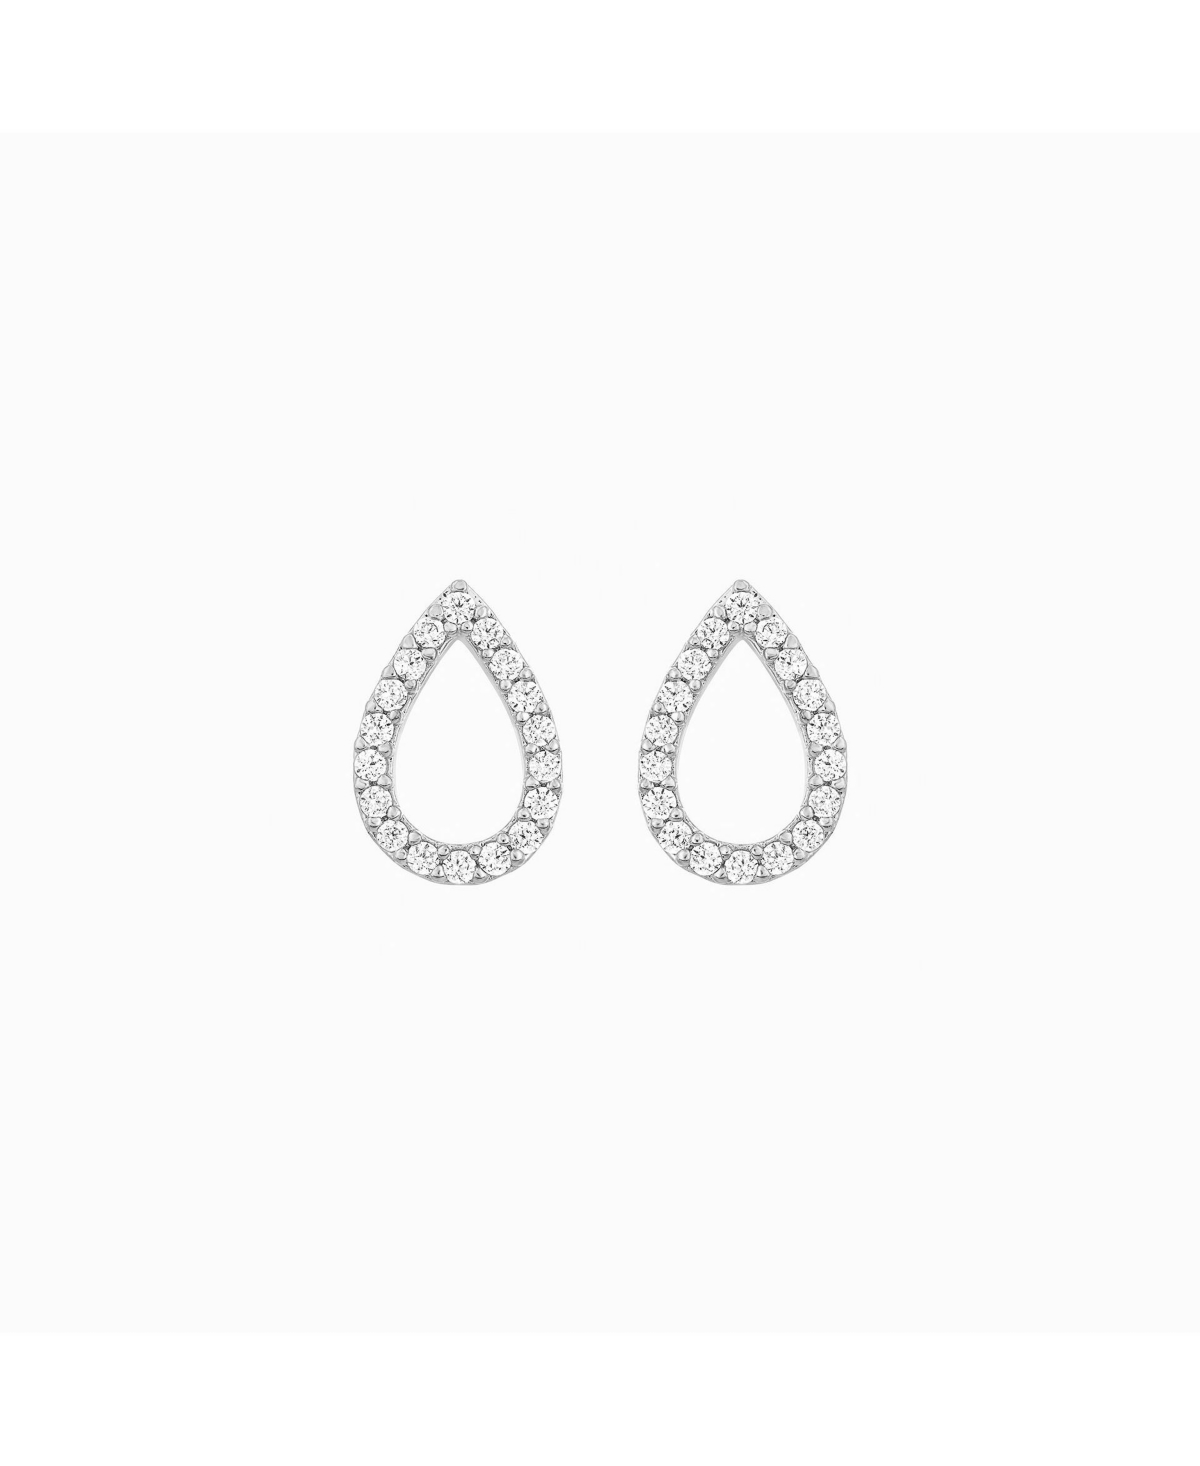 Livia Teardrop Stud Earrings - White gold